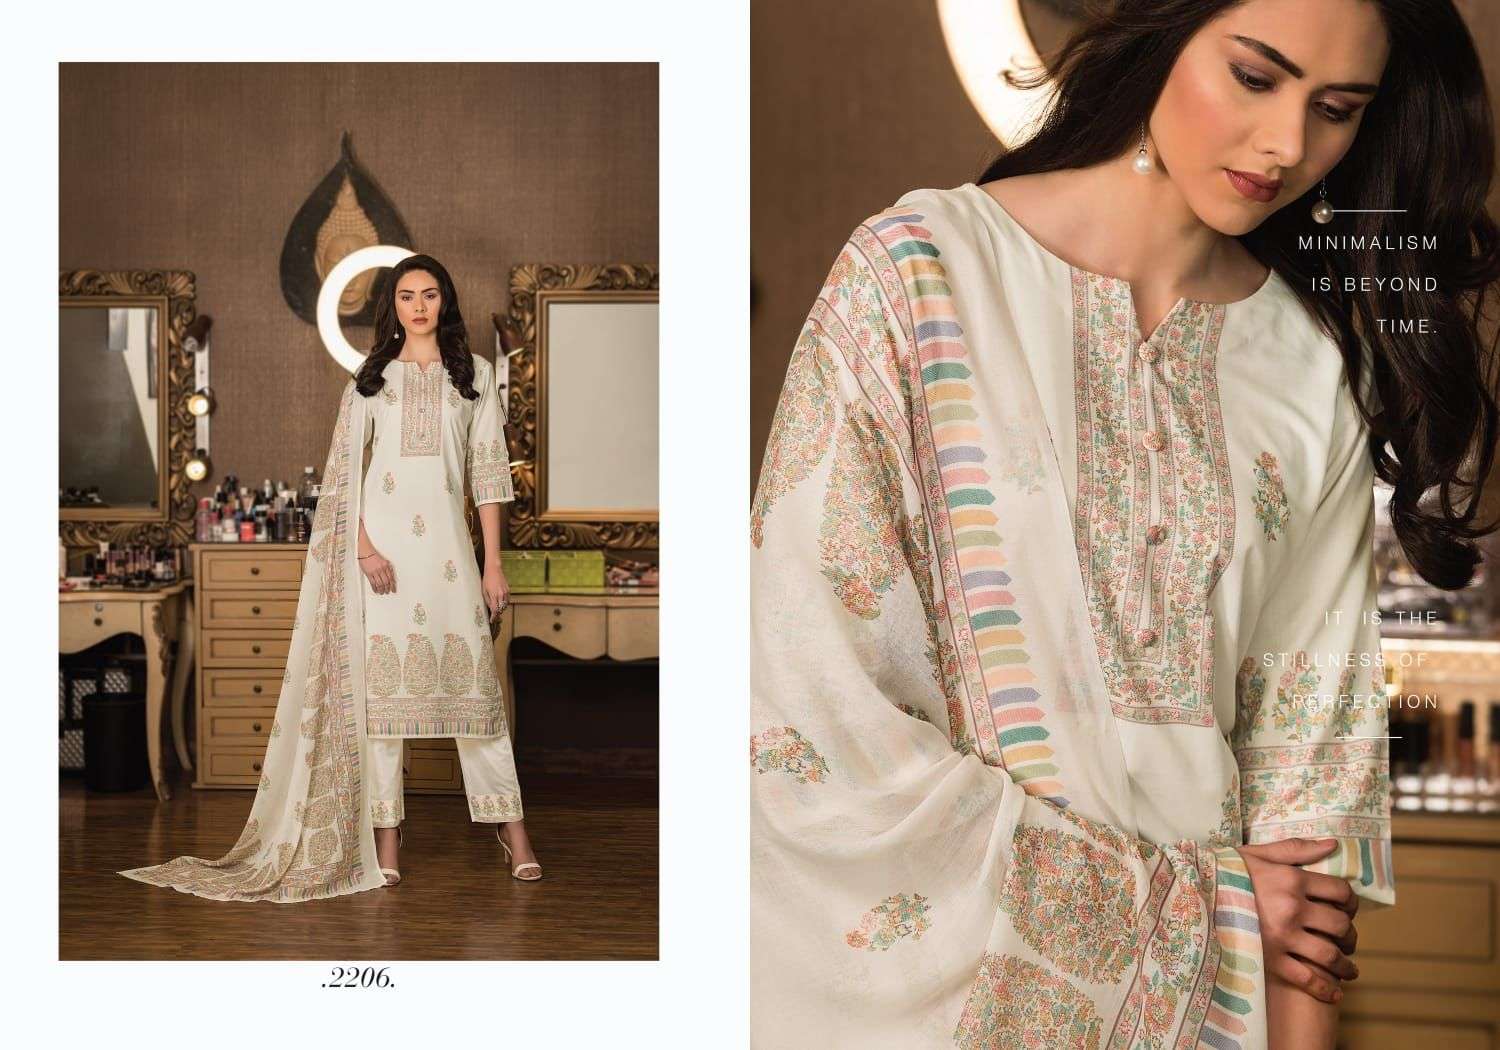 rivaa exports kasauti 2201-2207 series pashmina kani digital printed salwar suits collection 